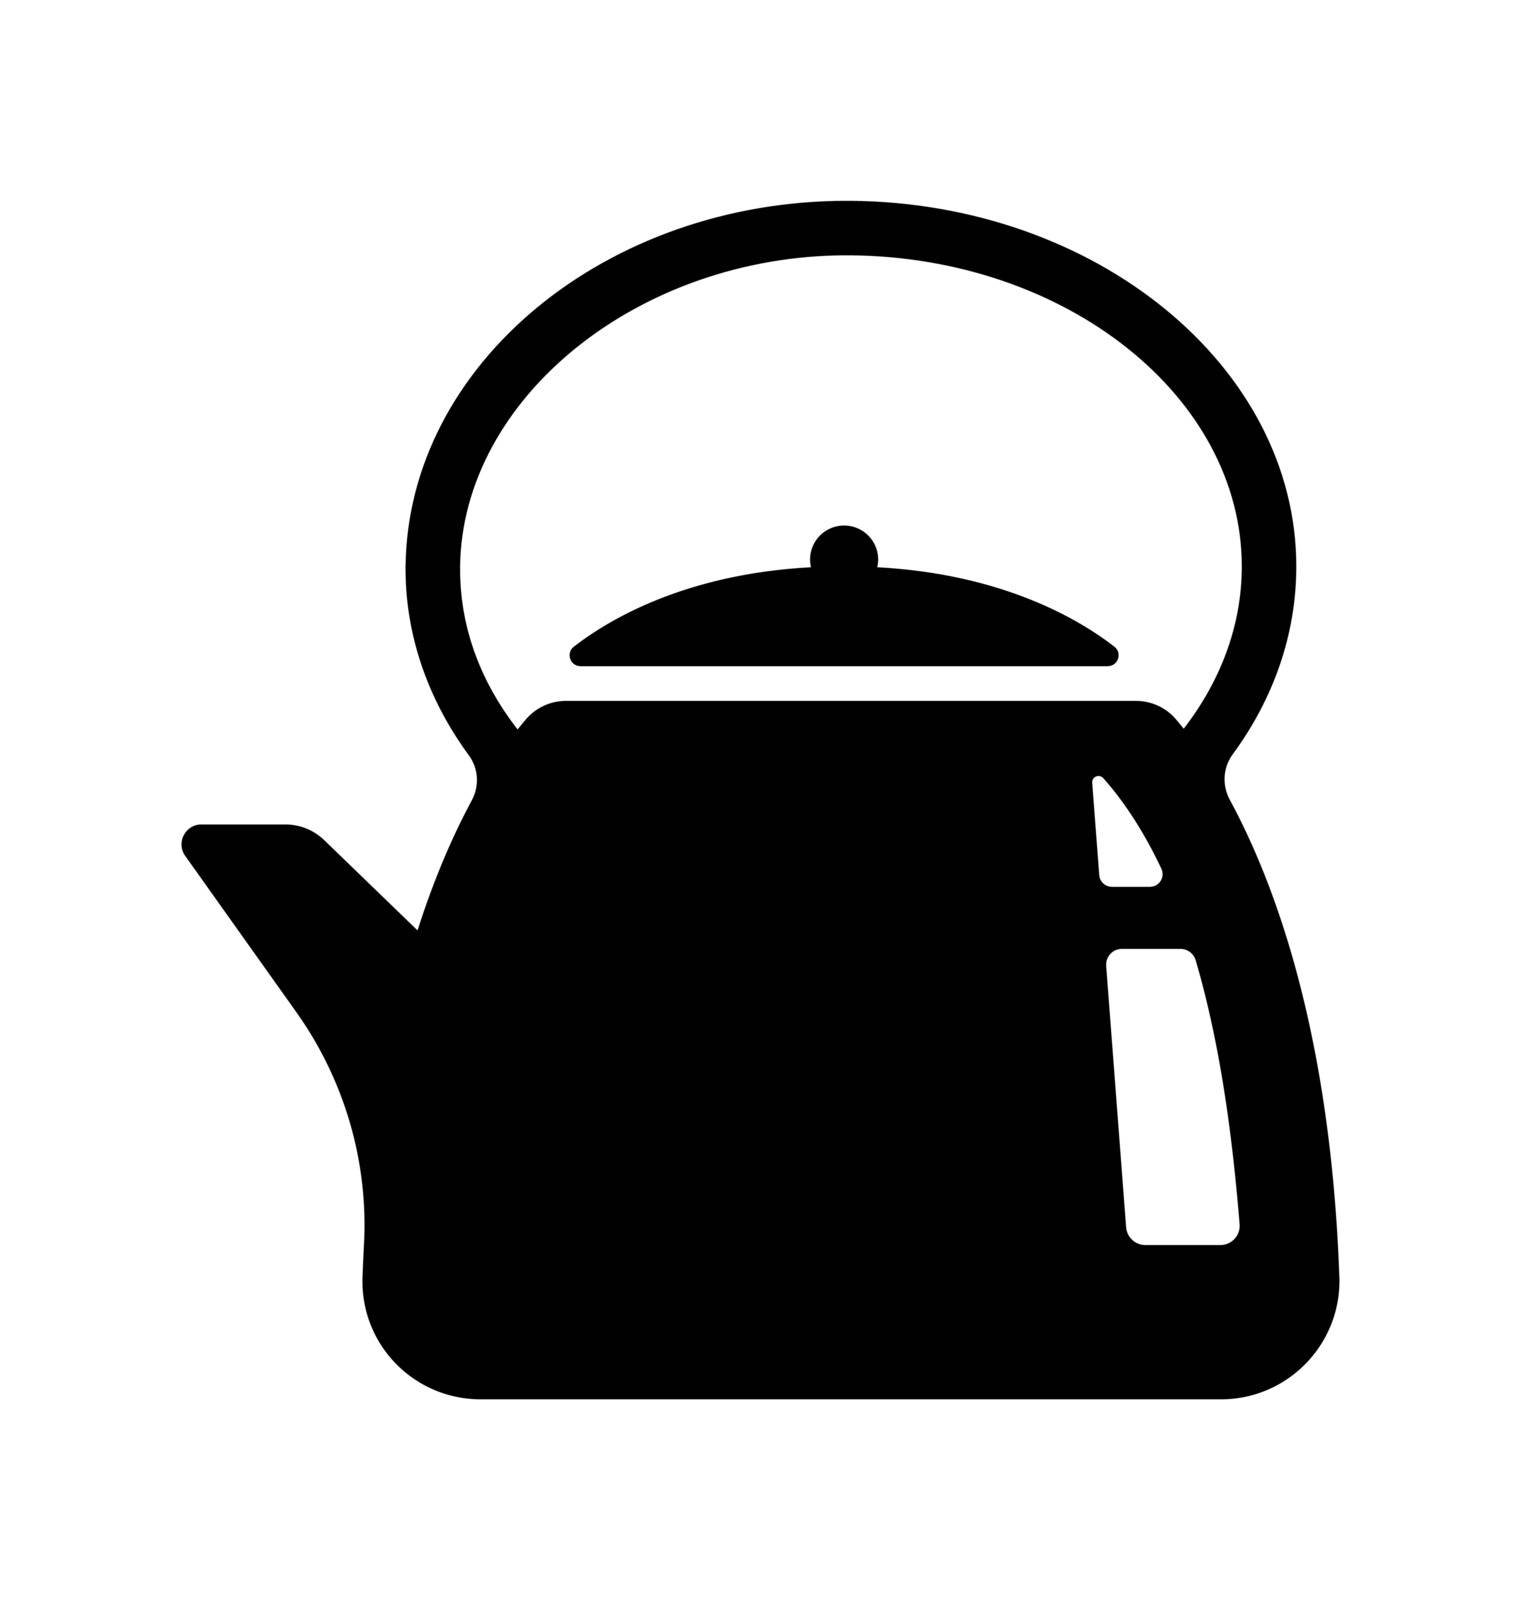 Kettle , teapot, kitchen vector icon illustration